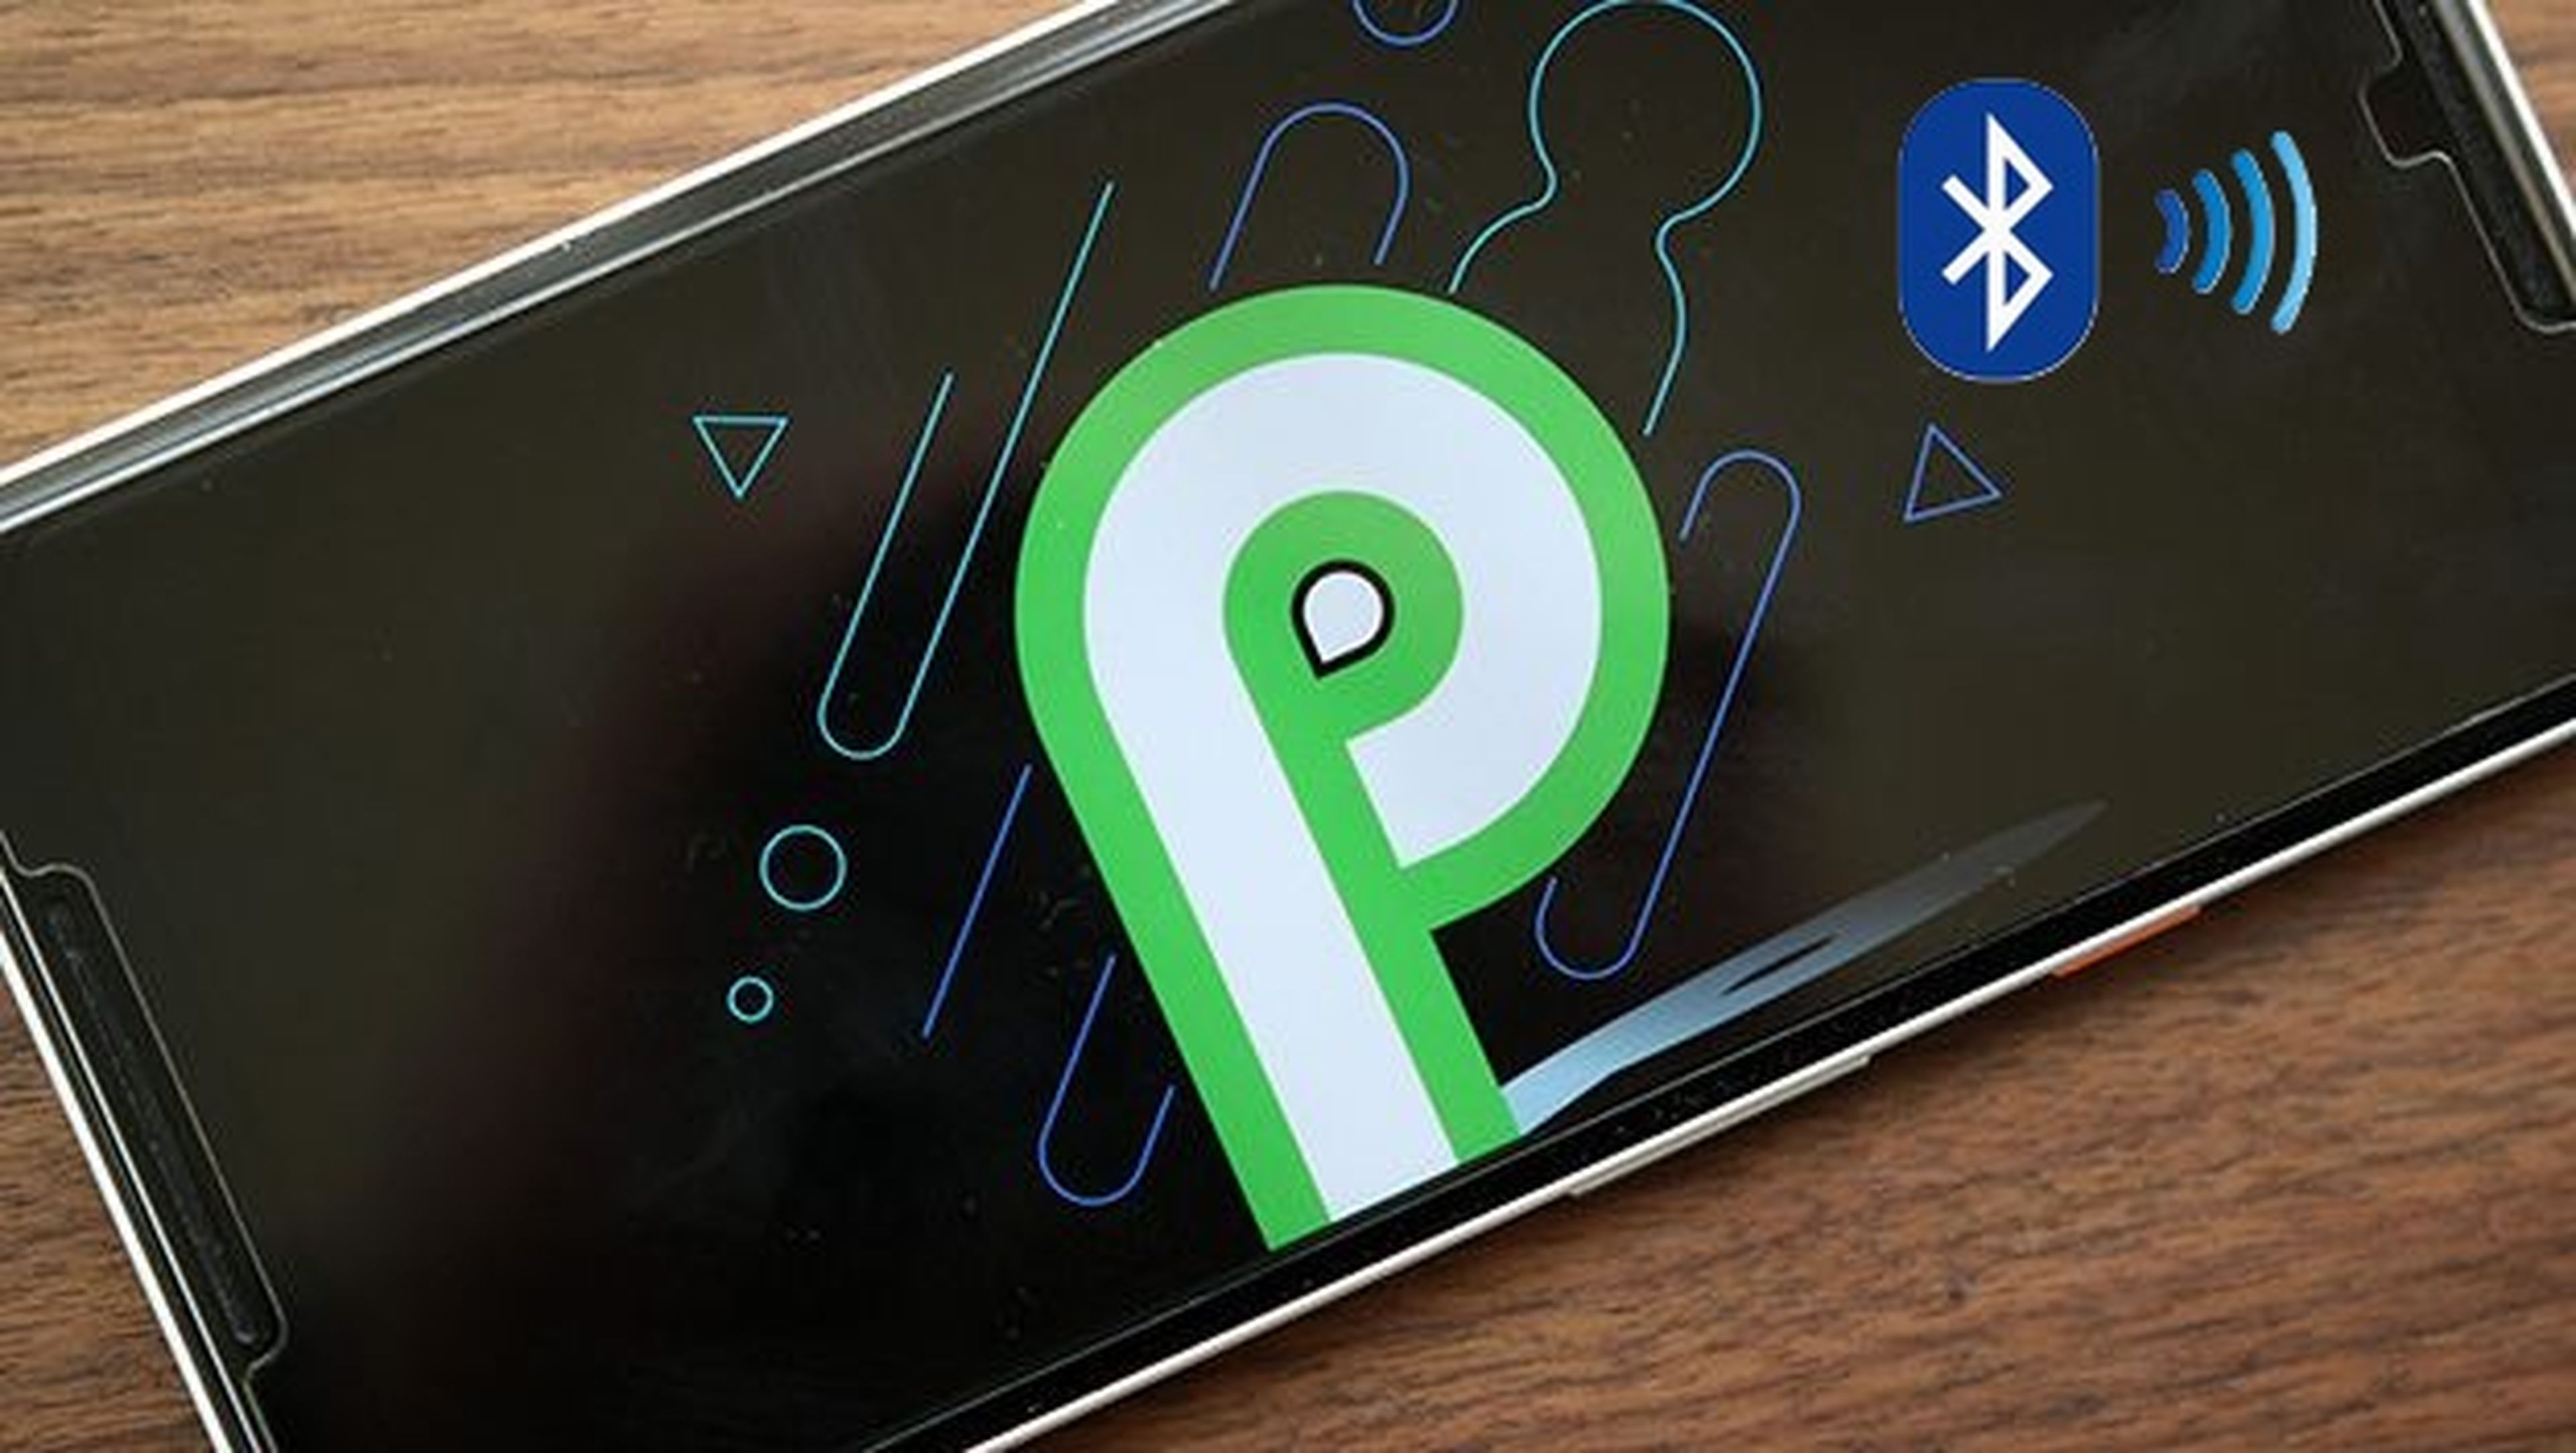 Android P recordará el volumen de todos los dispositivos Bluetooth